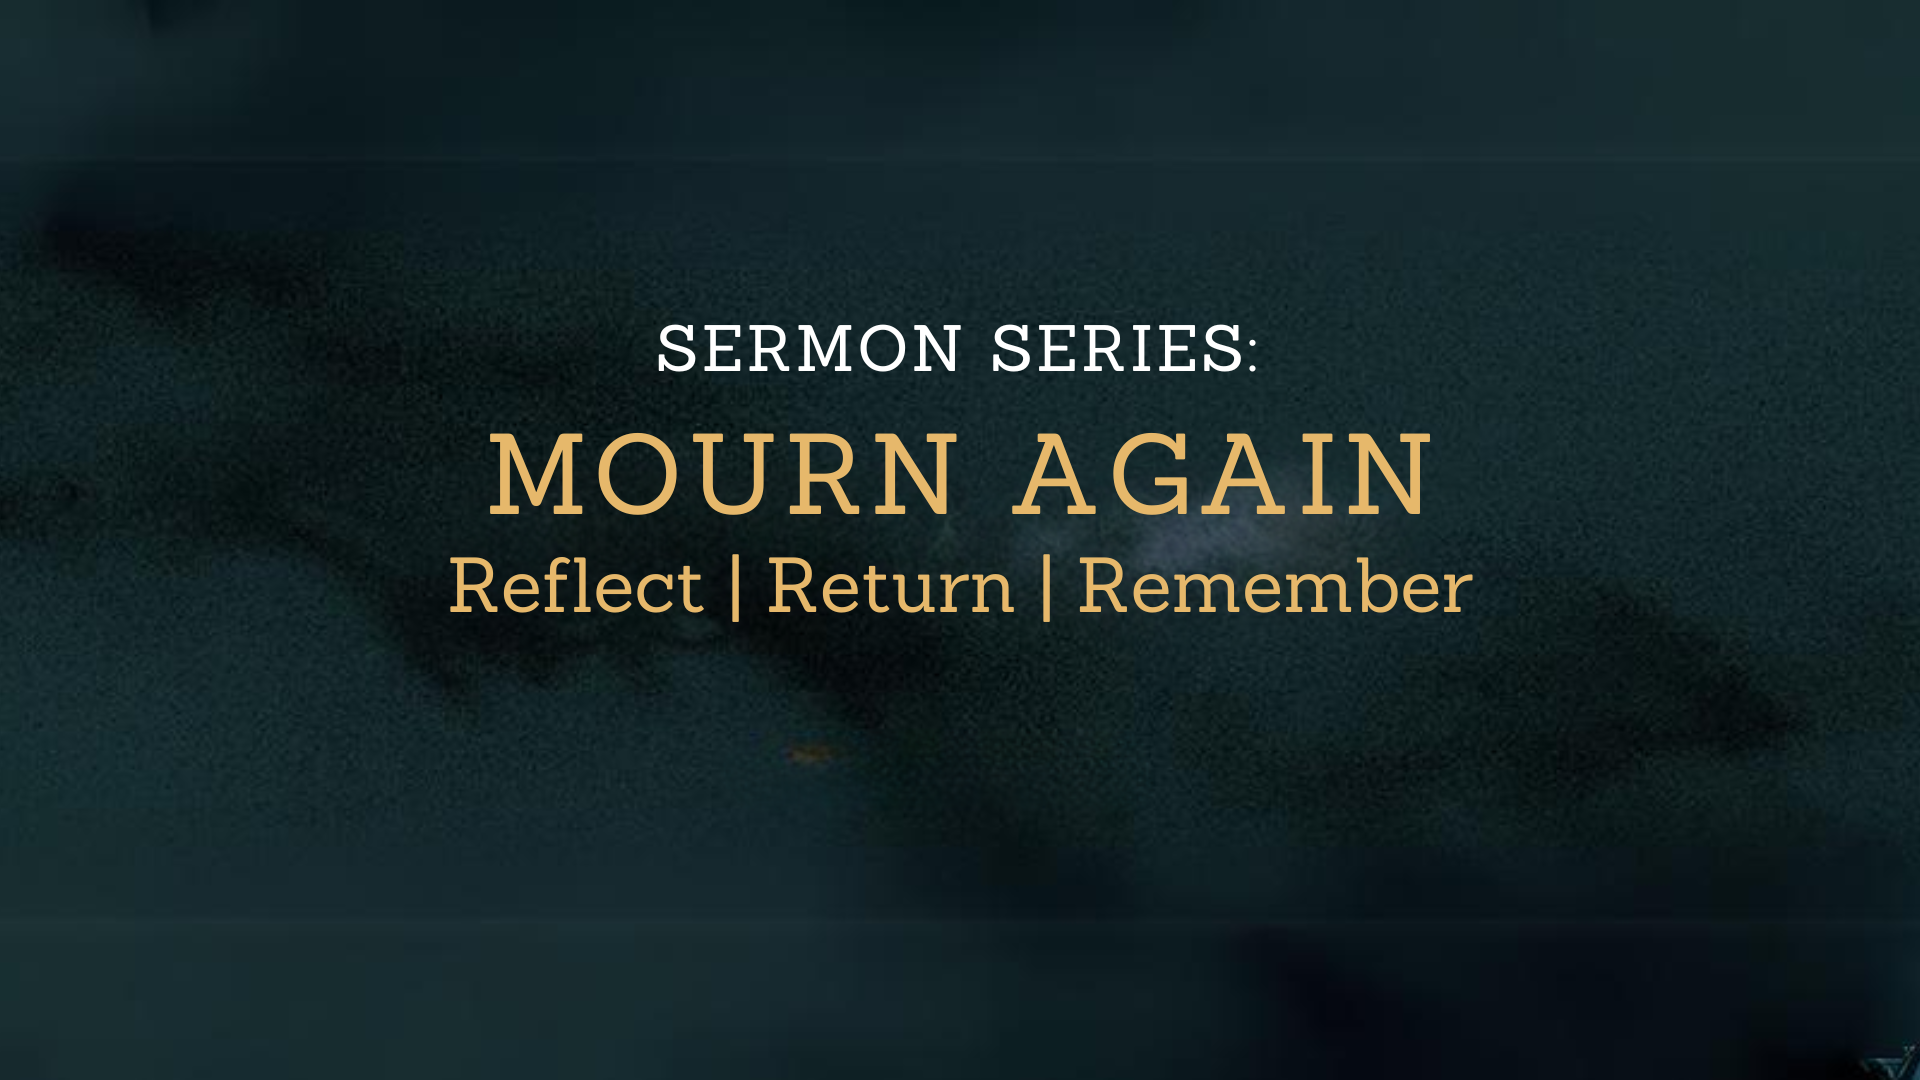 Mourn Again Sermon Series